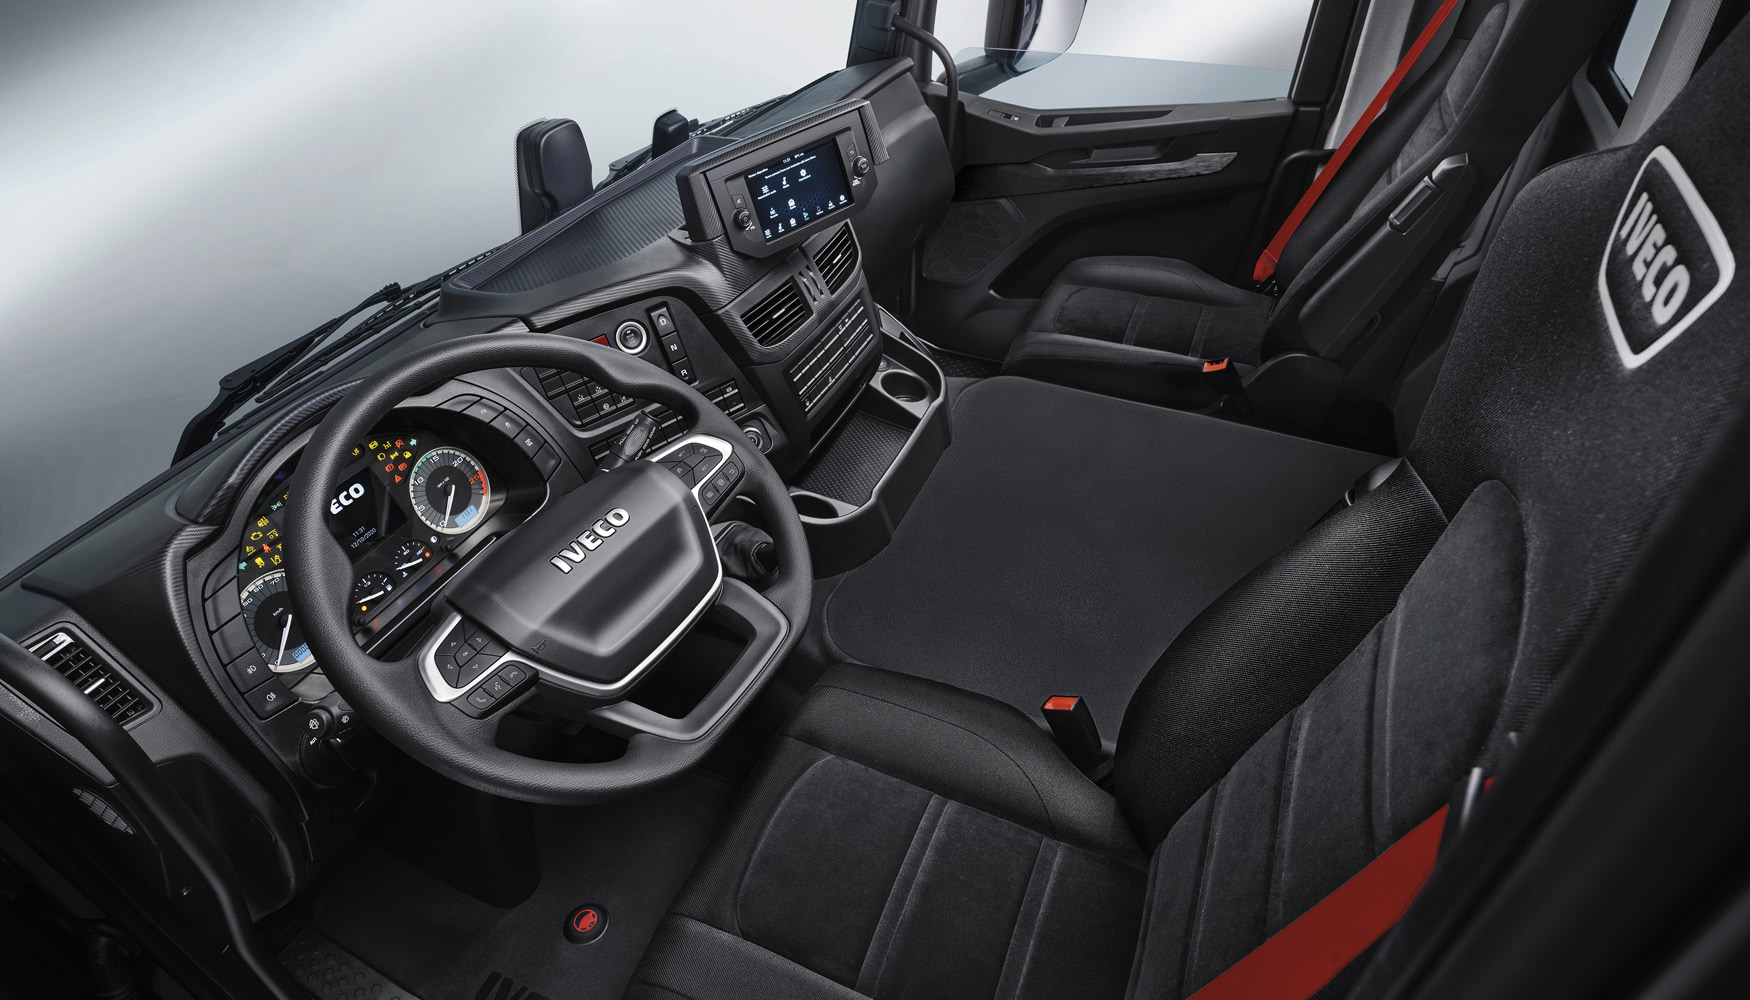 La cabina del Iveco T-Way comparte la esttica y practicidad para el conductor de la gama Iveco Way, con sus lneas elegantes y aerodinmicas...